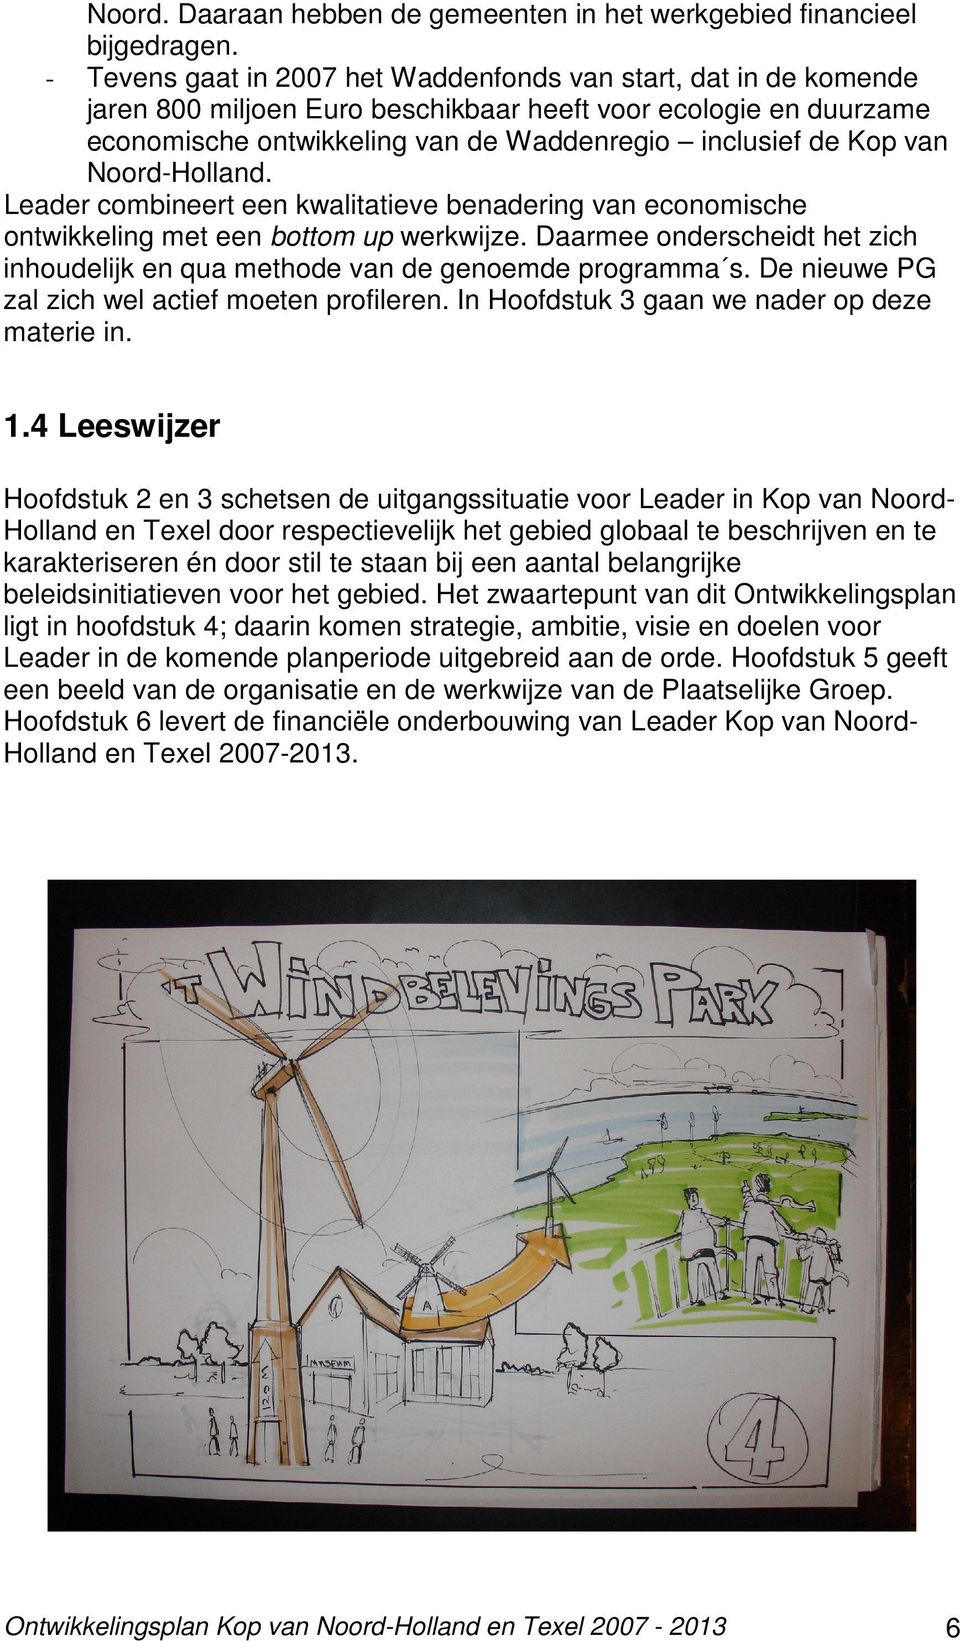 Noord-Holland. Leader combineert een kwalitatieve benadering van economische ontwikkeling met een bottom up werkwijze.